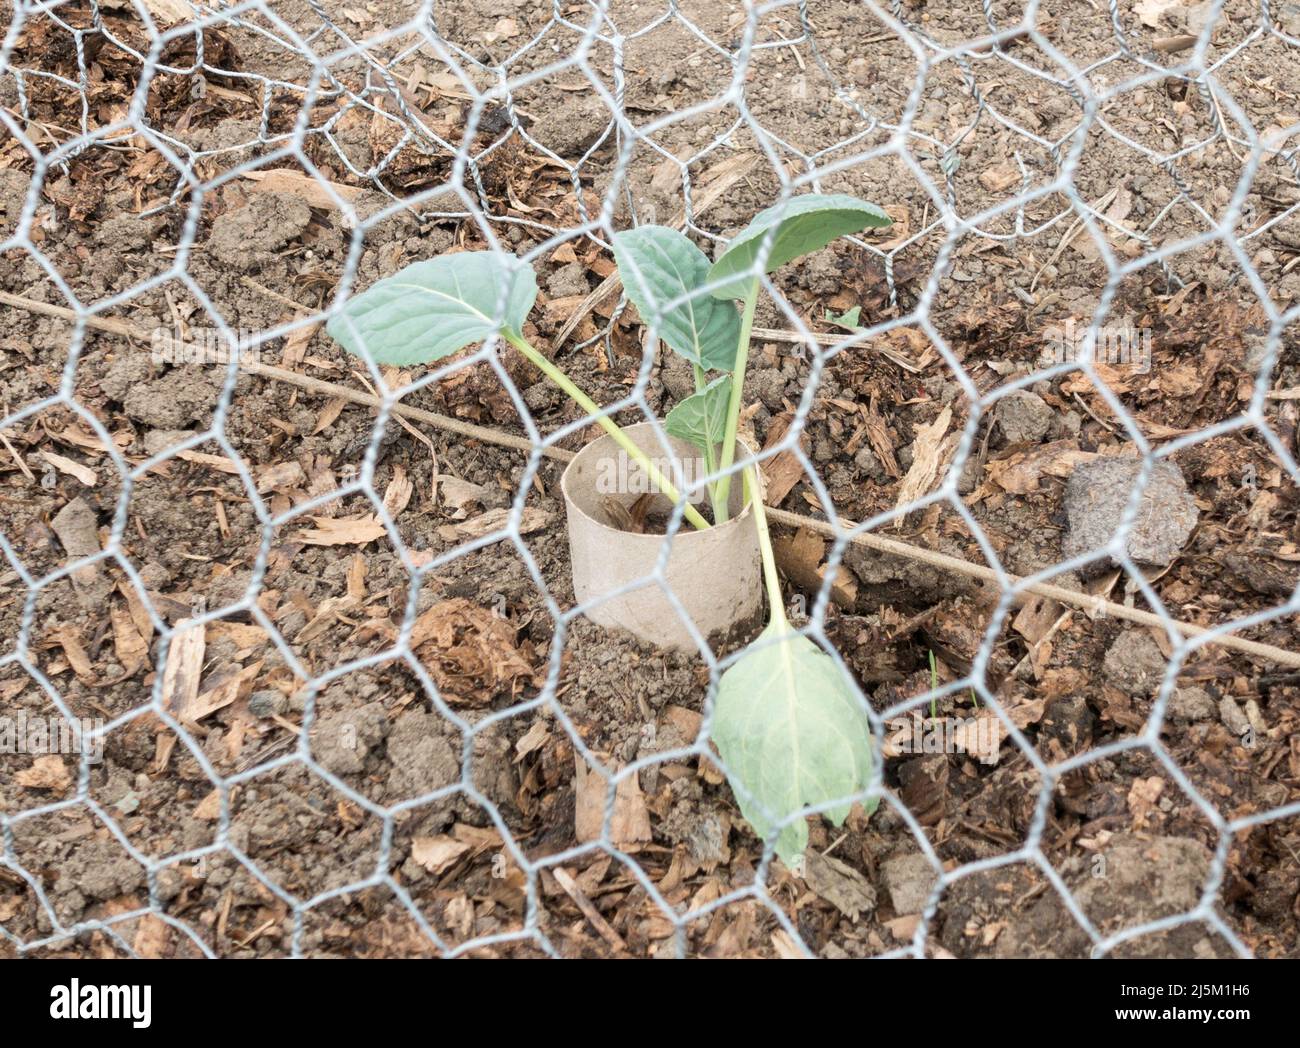 Eine junge Kohlpflanze, die durch ein halb vergrabenes recyceltes Toilettenpapierrohr vor Schäden durch Schnittwurm geschützt wurde, England, Großbritannien Stockfoto